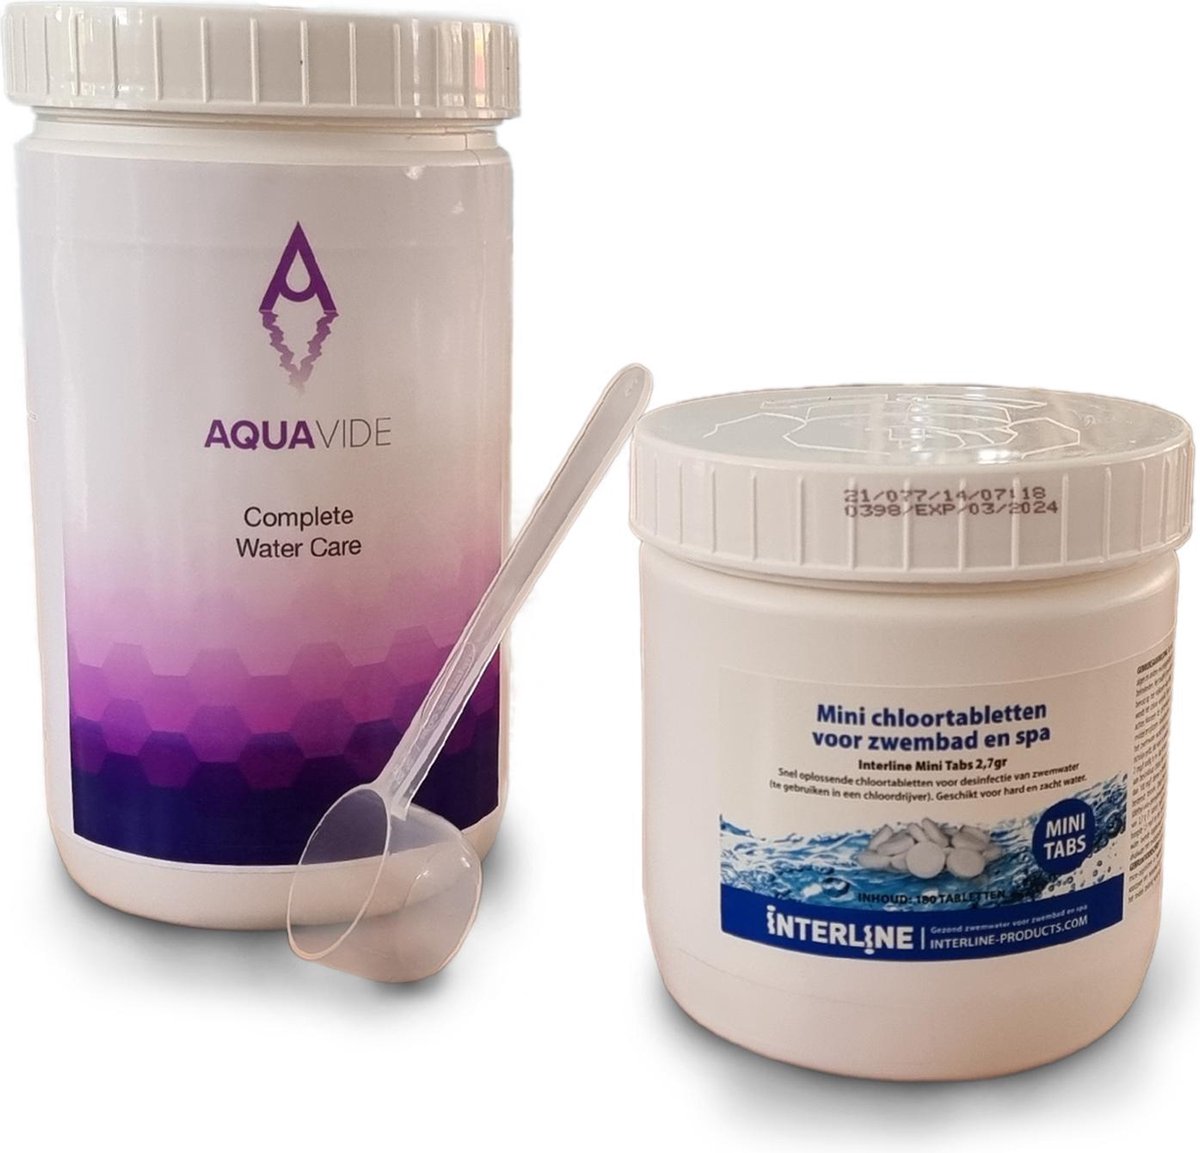 AquaVide - Opzetzwembad zwembad onderhoud - chloortabletten - reiniging